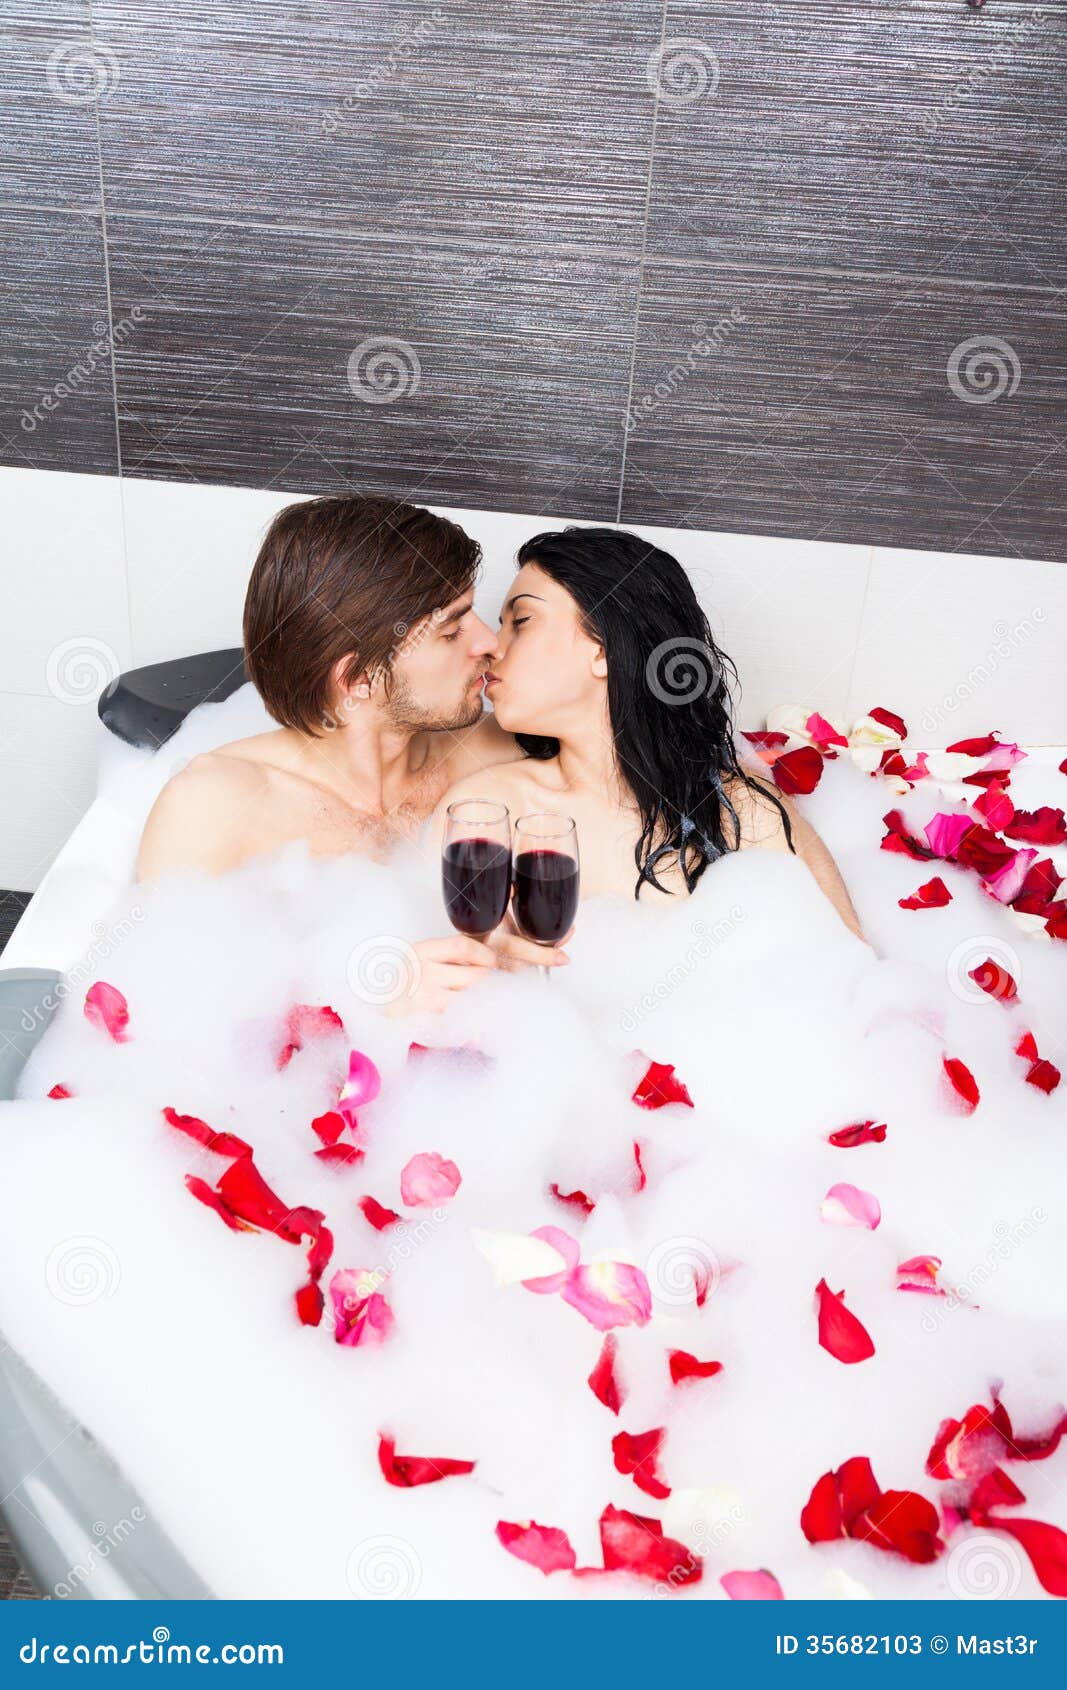 Жена с другом в ванной. Фотосессия пары в ванной. Ванная с лепестками роз. Романтика в ванной. Ванна с розами.